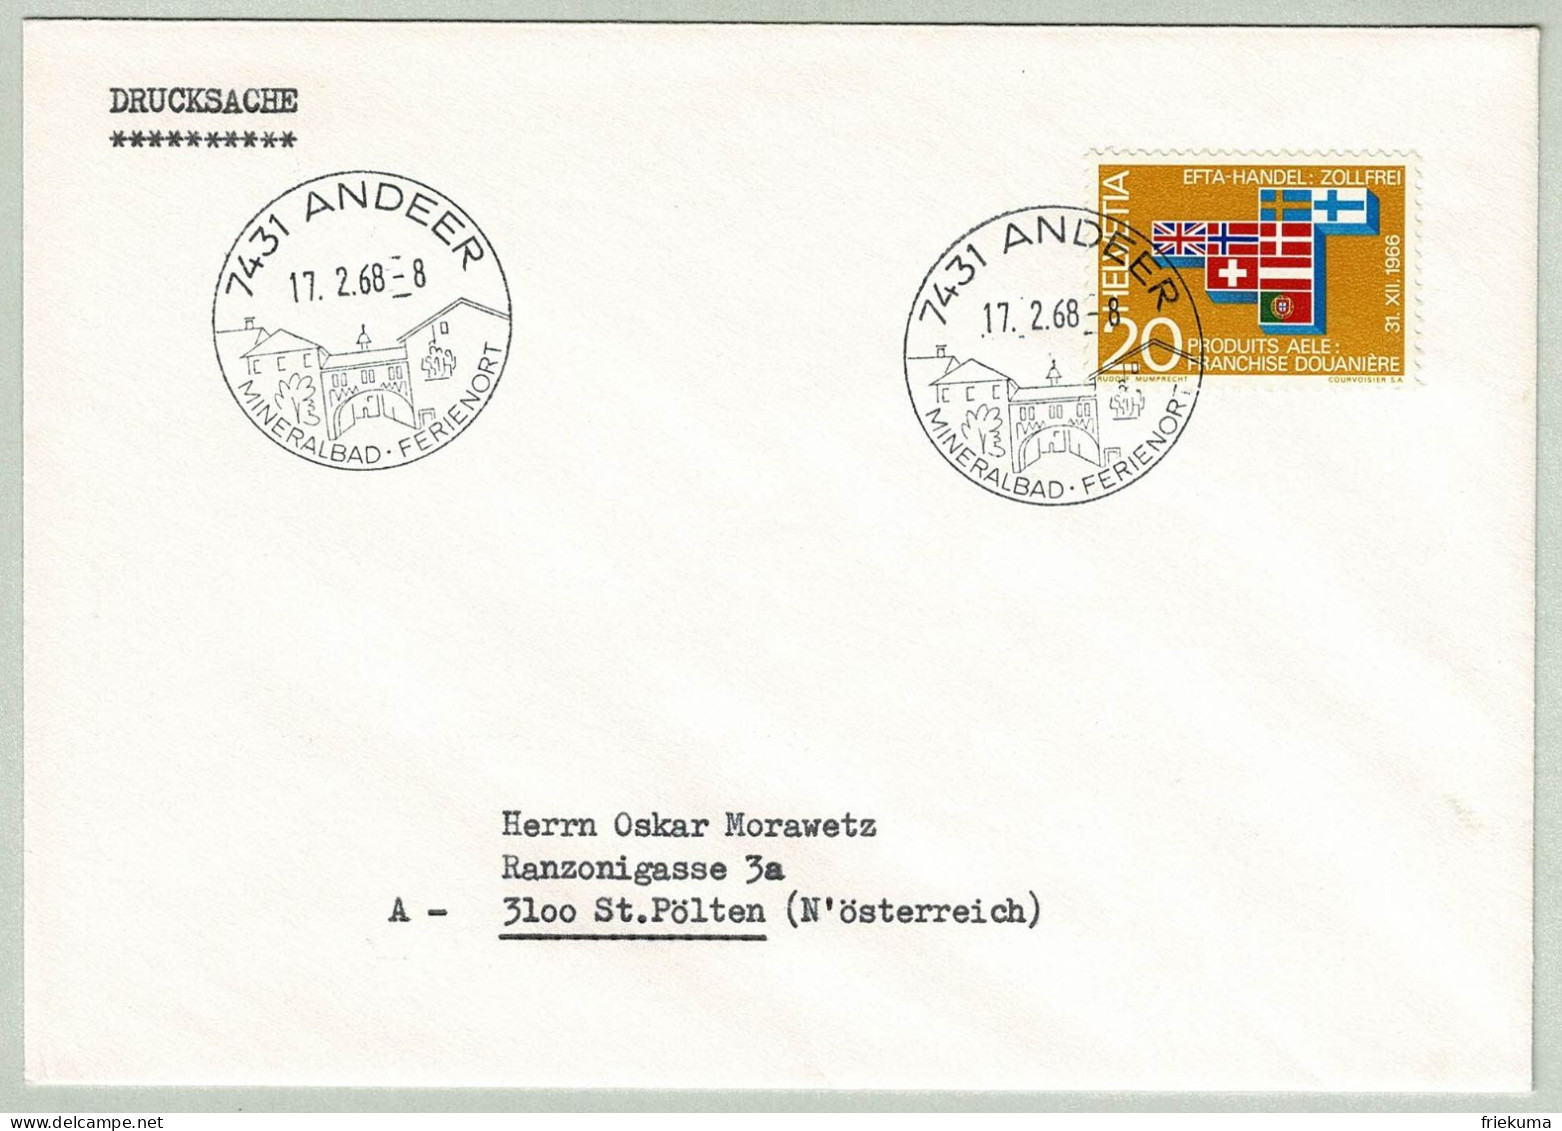 Schweiz / Helvetia 1968, Brief Drucksache Andeer - St. Pölten (Oesterreich), Mineralbad - Kuurwezen